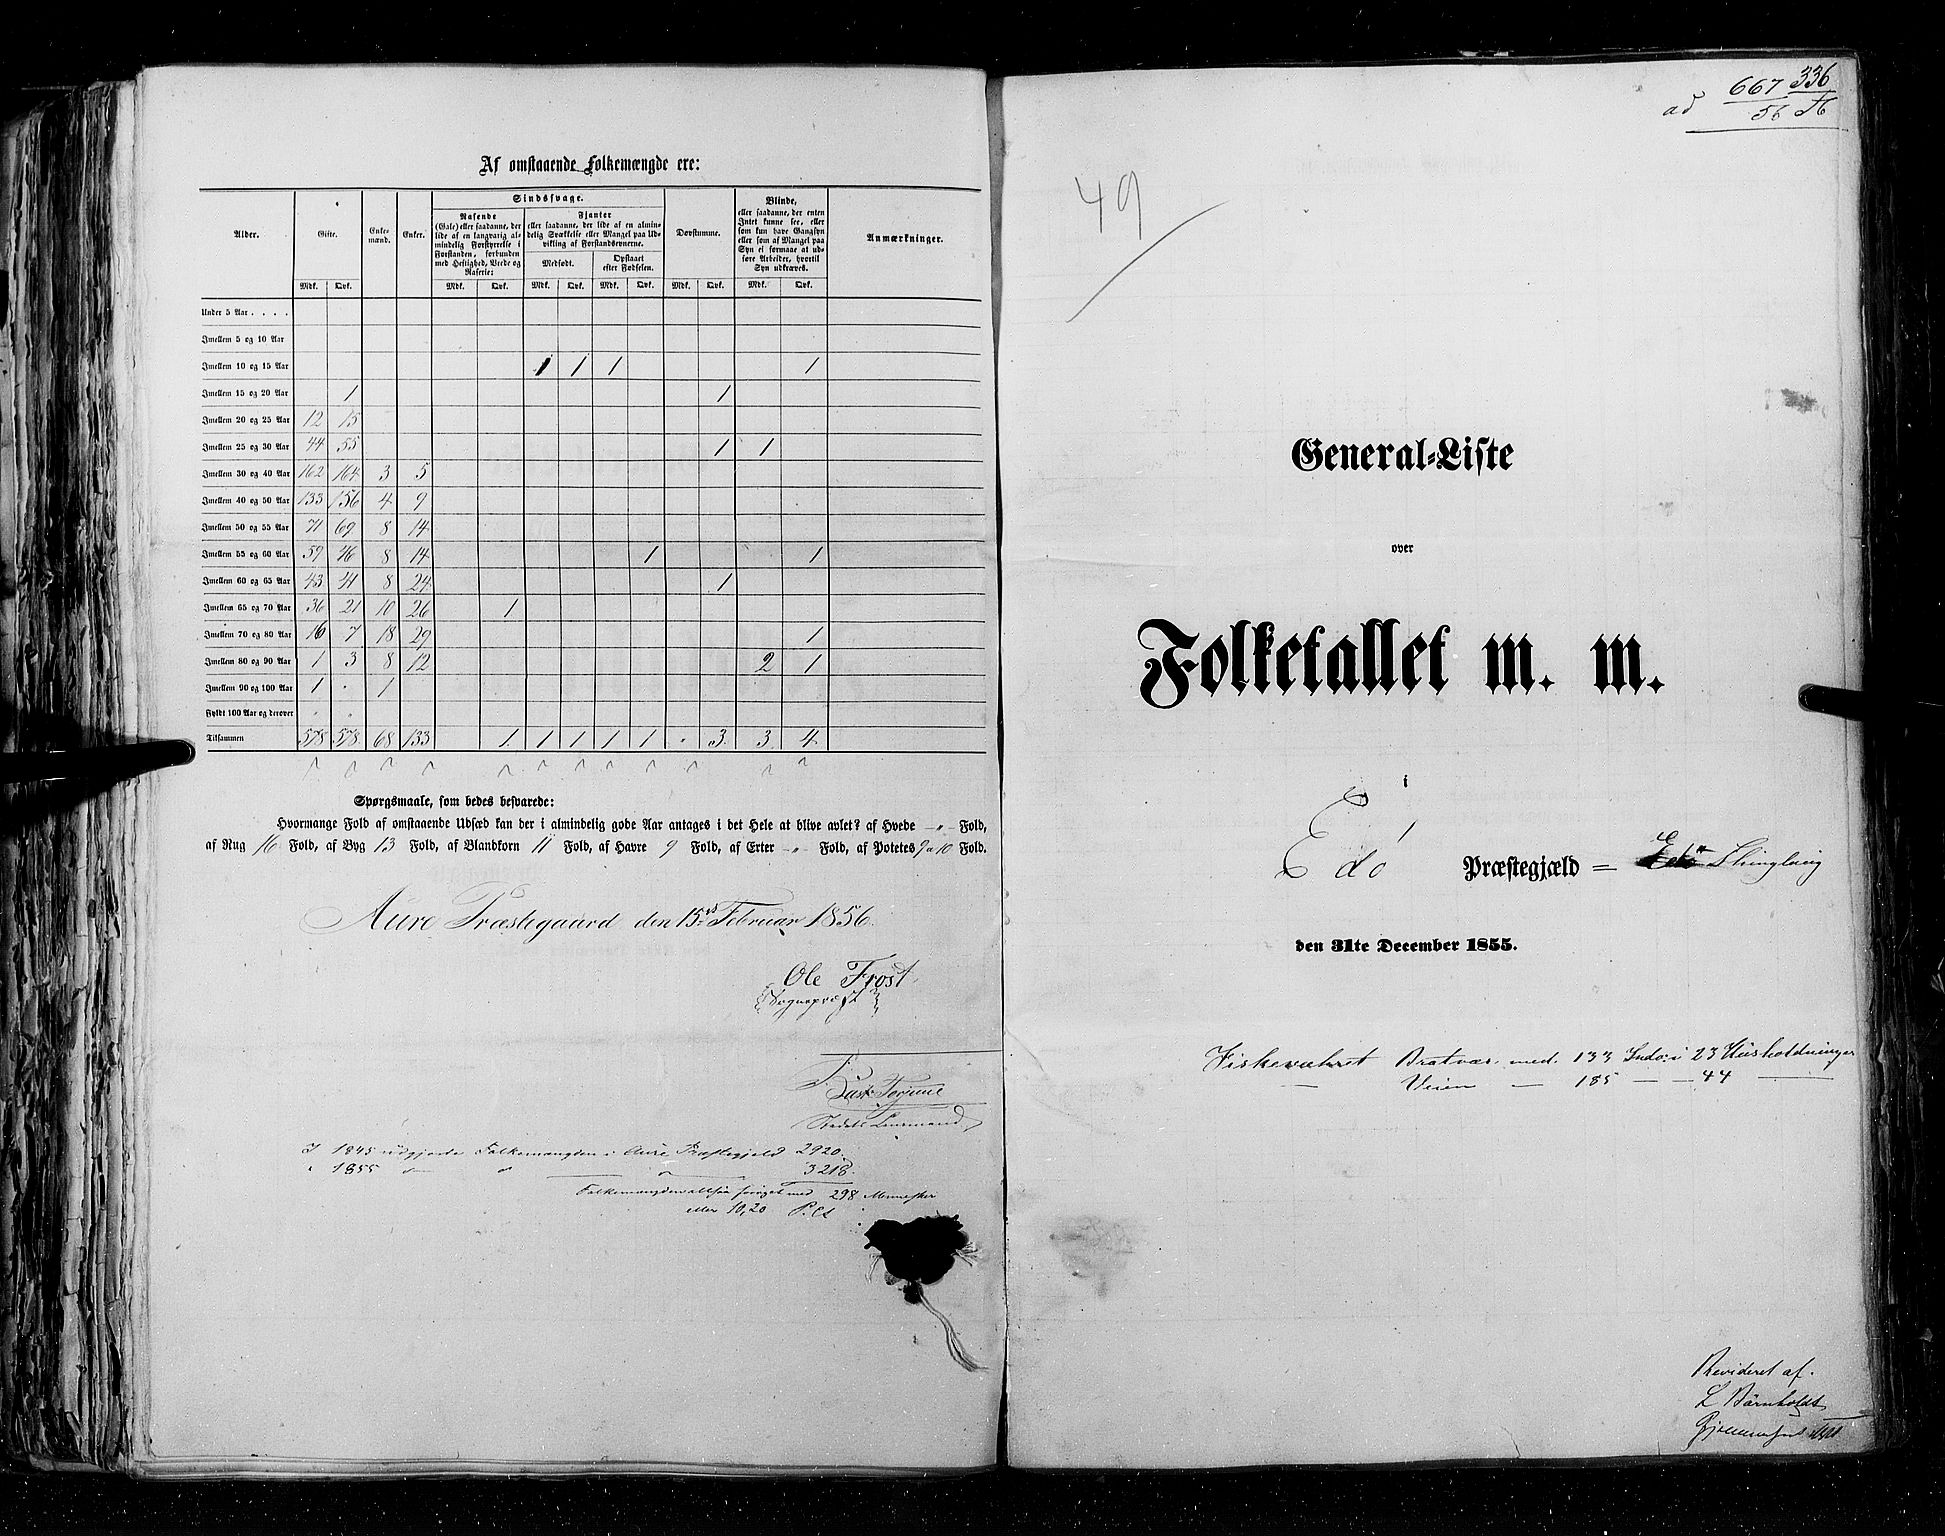 RA, Census 1855, vol. 5: Nordre Bergenhus amt, Romsdal amt og Søndre Trondhjem amt, 1855, p. 336